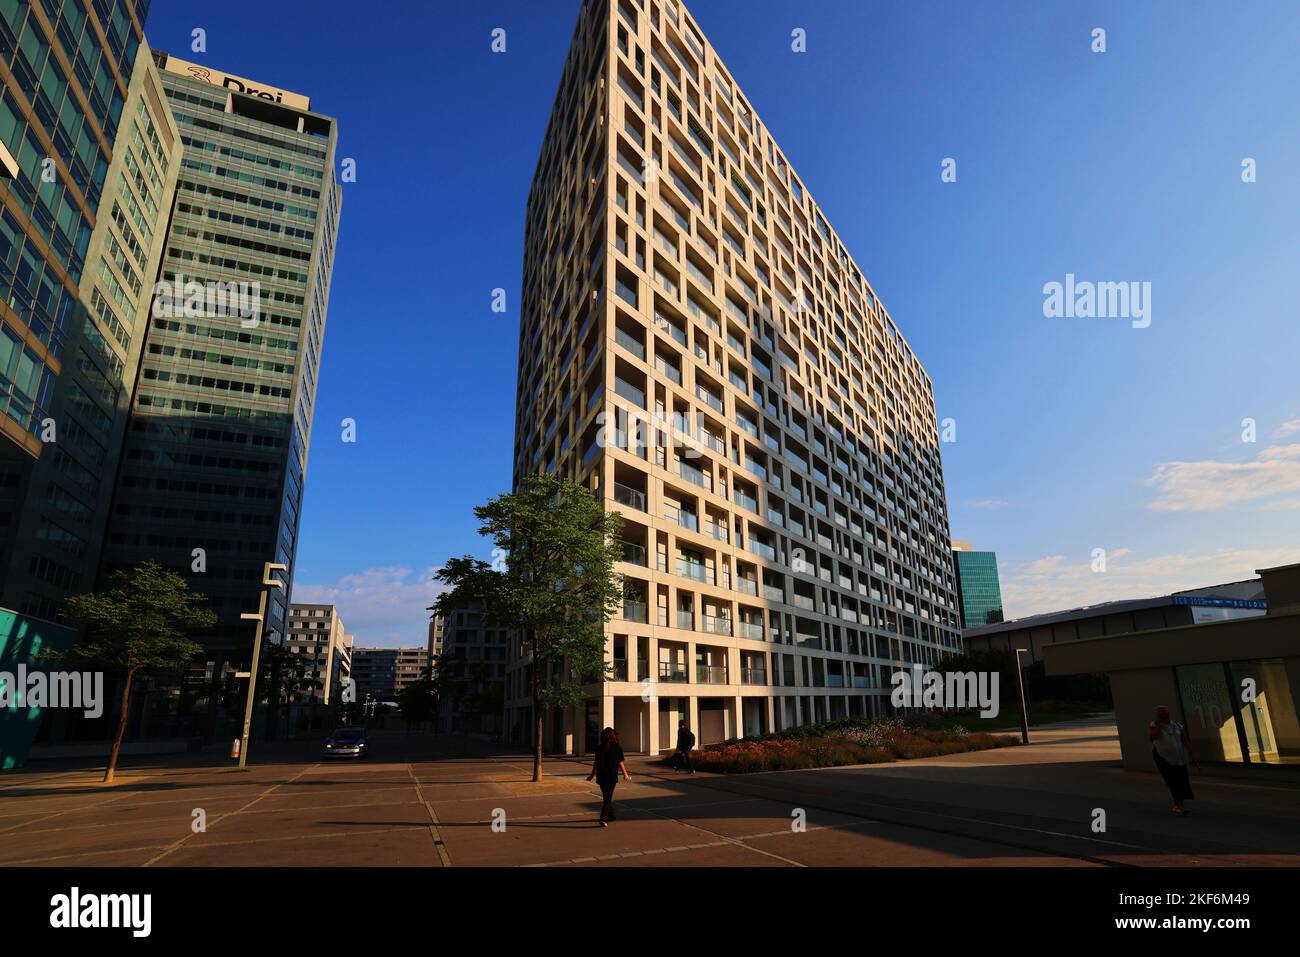 Donau City, Wien, Wien Architektur, Modern, Wien, moderne Architektur, in der Donaustadt mit Fenster und Spiegelung und Wand Banque D'Images